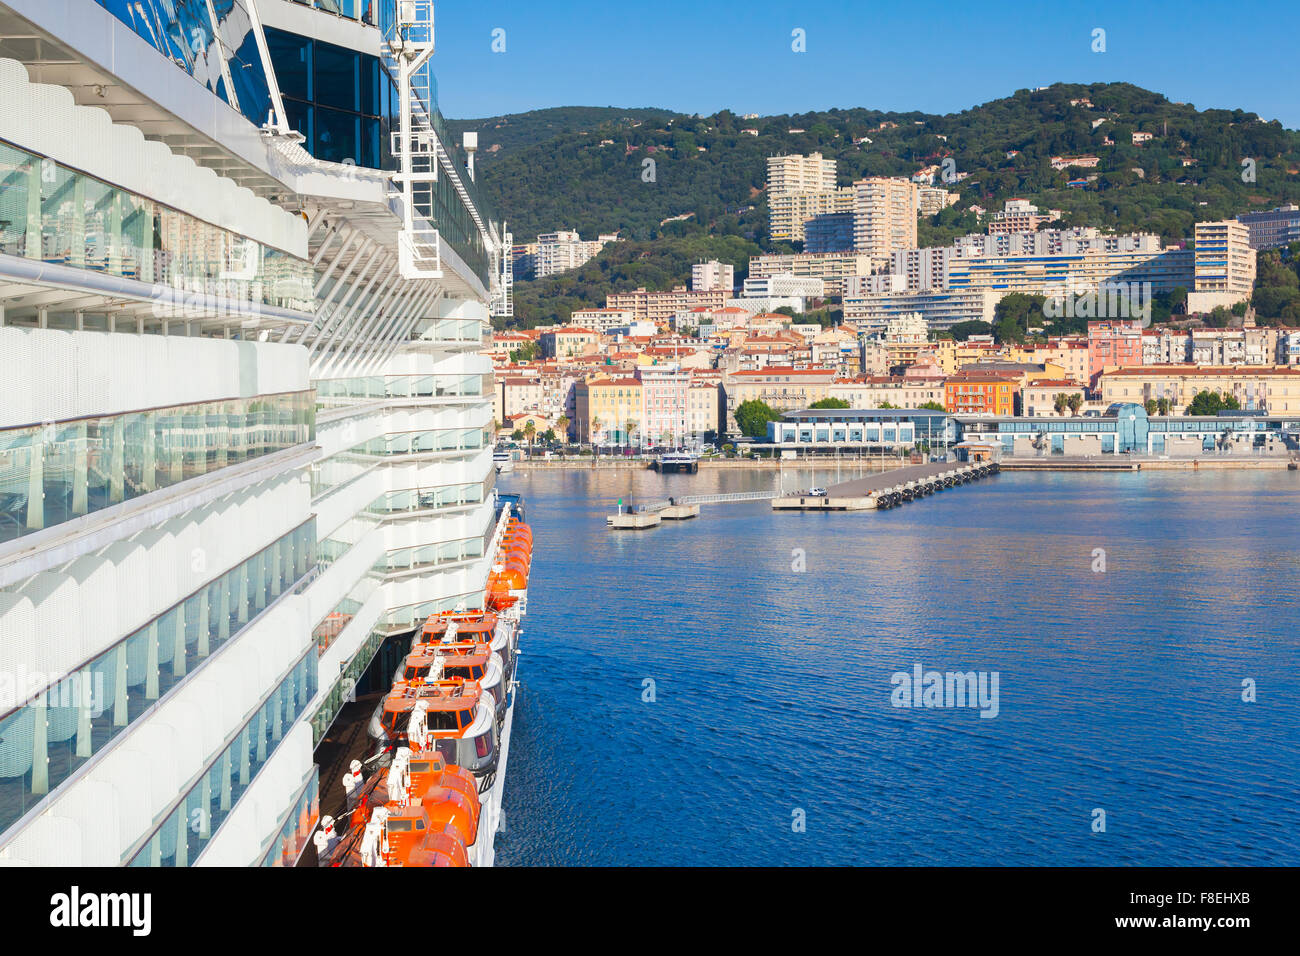 Großen Passagier Kreuzfahrtschiff betritt den Hafen von Ajaccio, Korsika, Frankreich. Blick von einem Kapitän Brücke Flügel Stockfoto